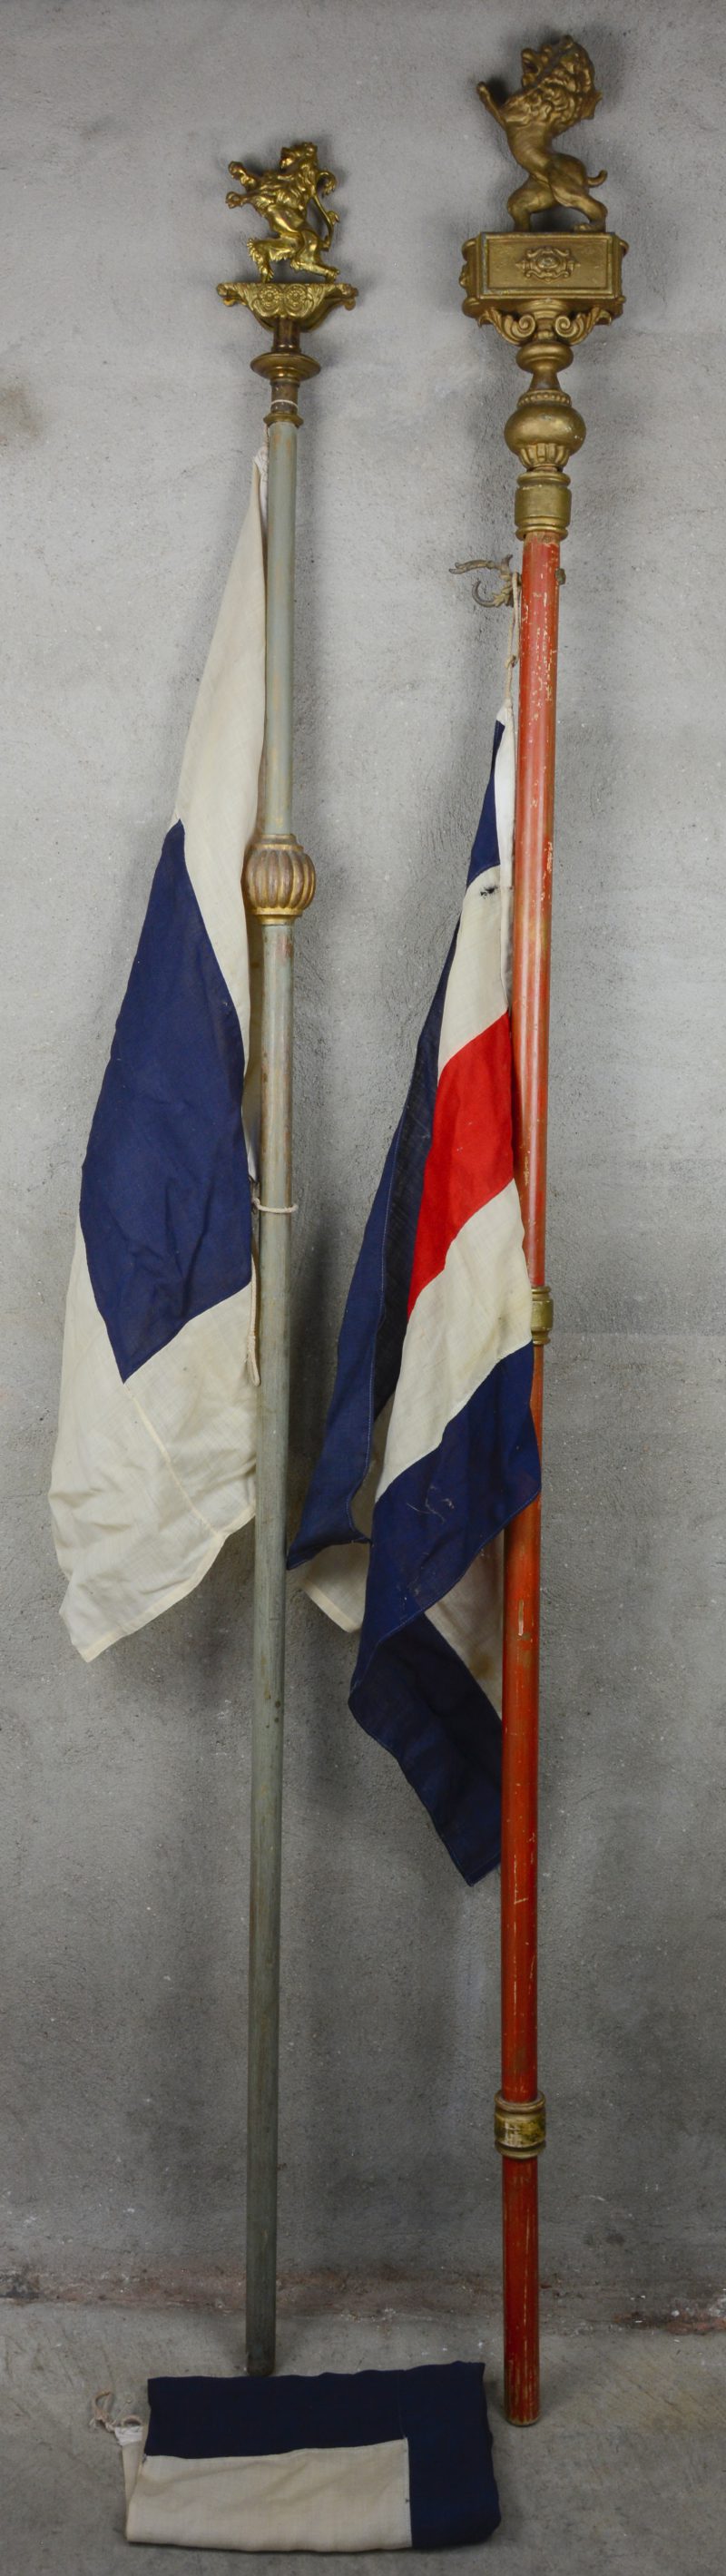 Twee verschillende vlaggenstokken, bovenaan getooid met een leeuw.